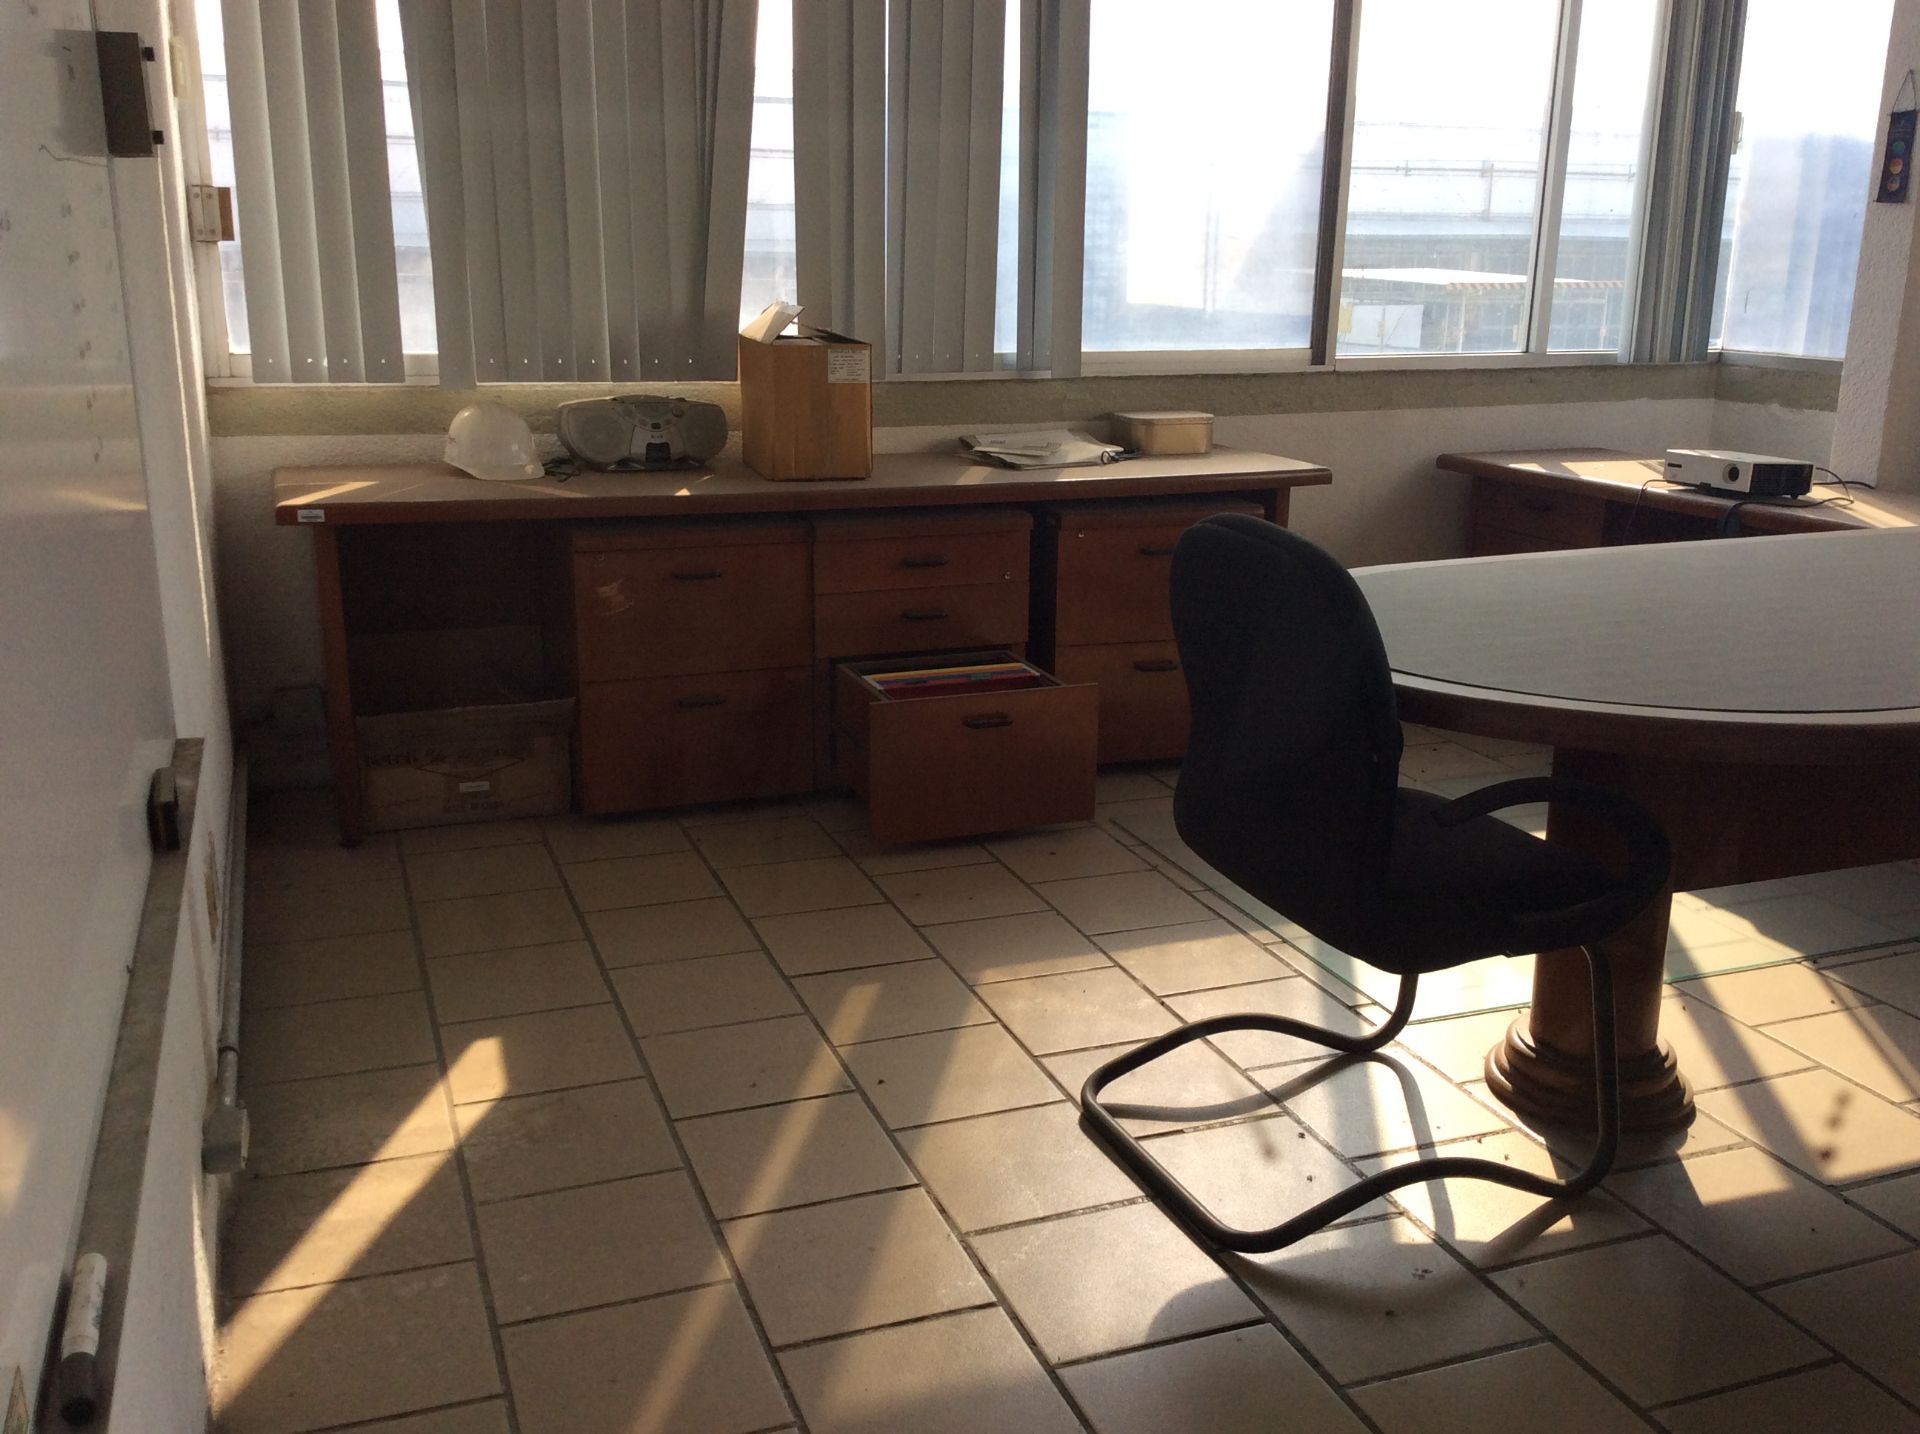 Oficina ejecutiva, 1 escritorio en escuadra, credenza, 3 archiveros, 1 librero, 3 sillas y puerta. - Image 2 of 5